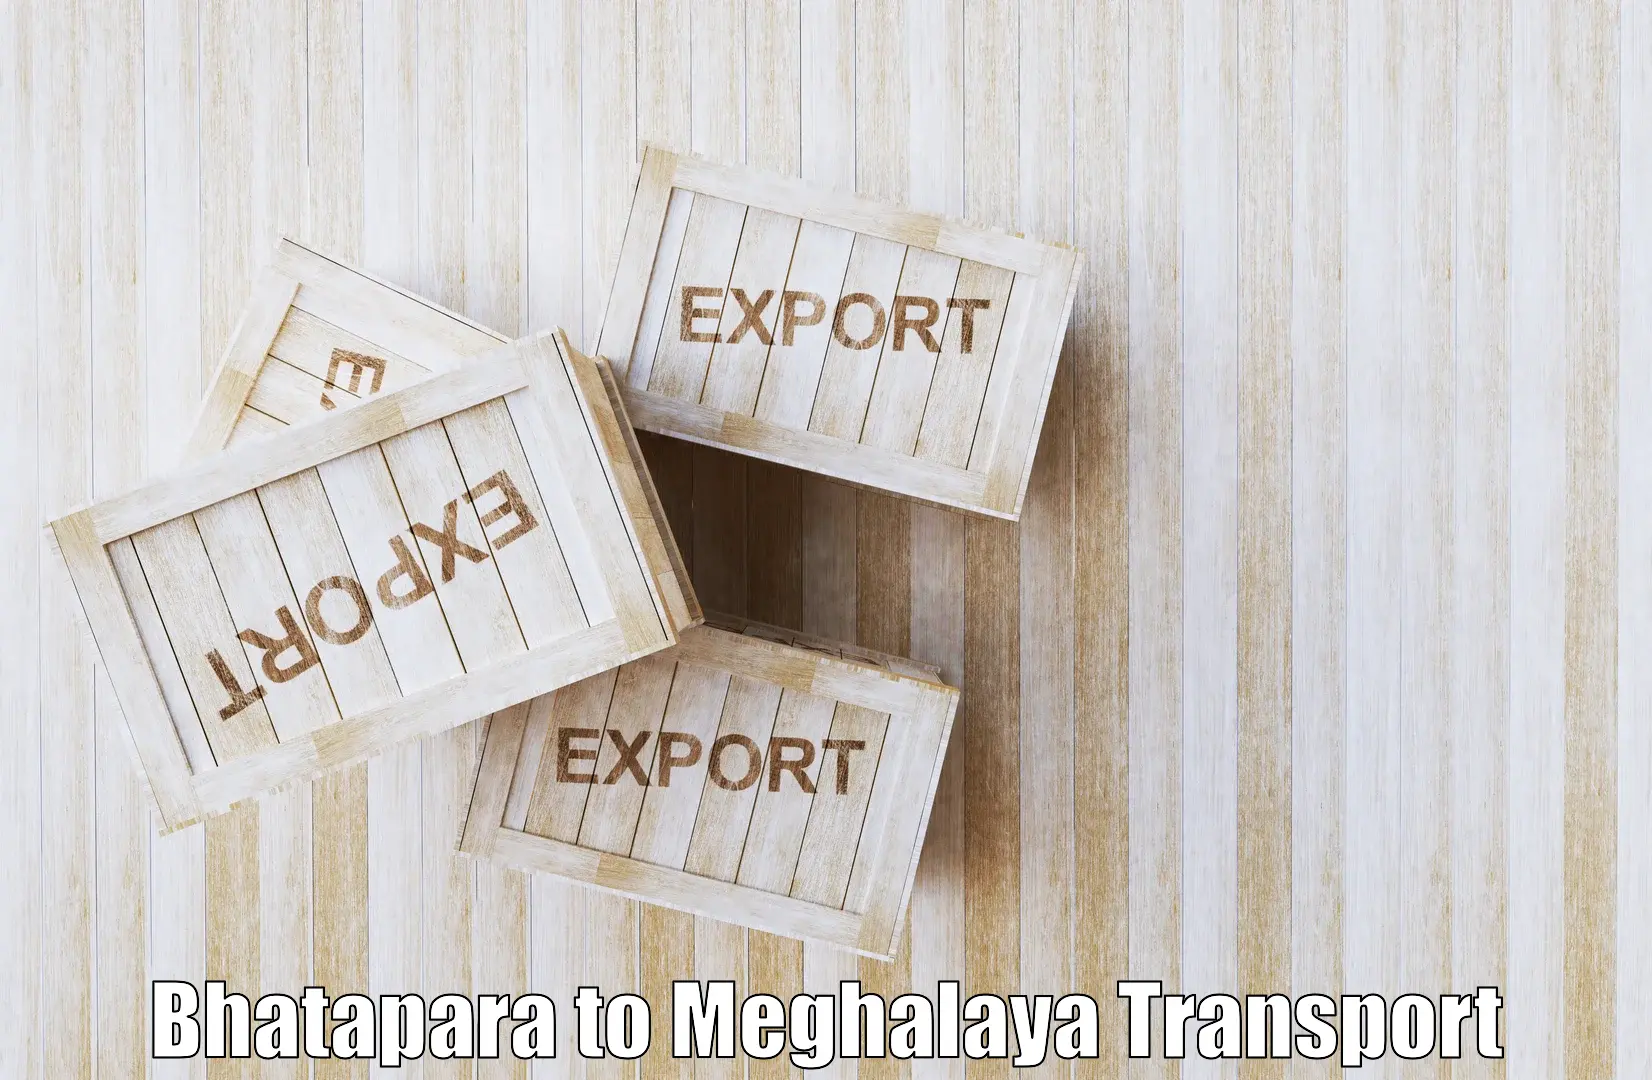 Two wheeler transport services in Bhatapara to Meghalaya